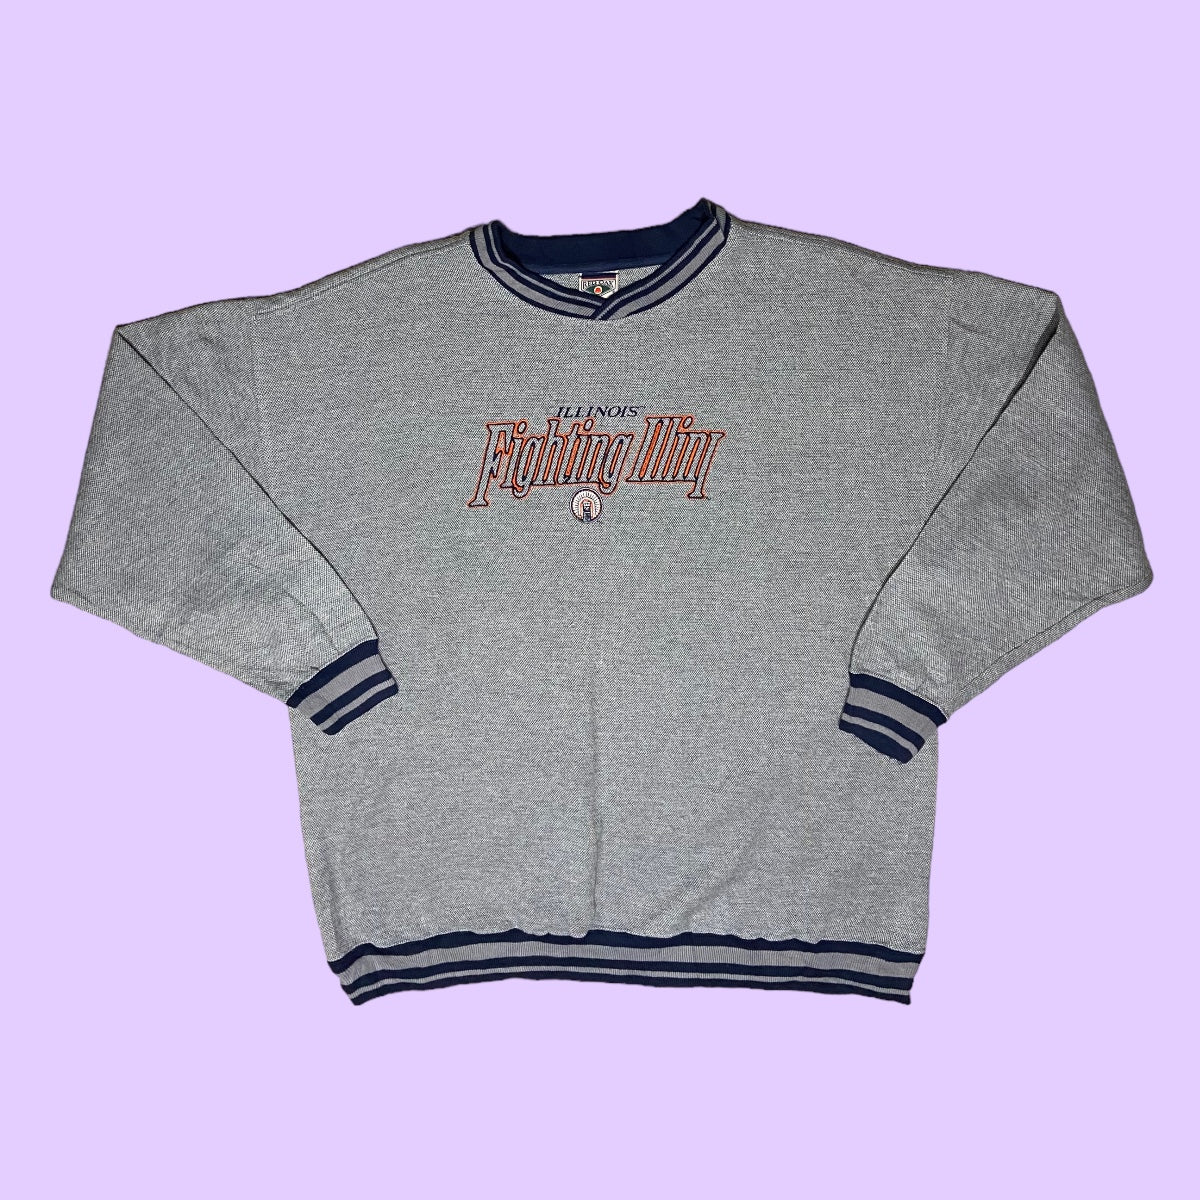 Vintage Illinois Fighting Illini sweater - XL